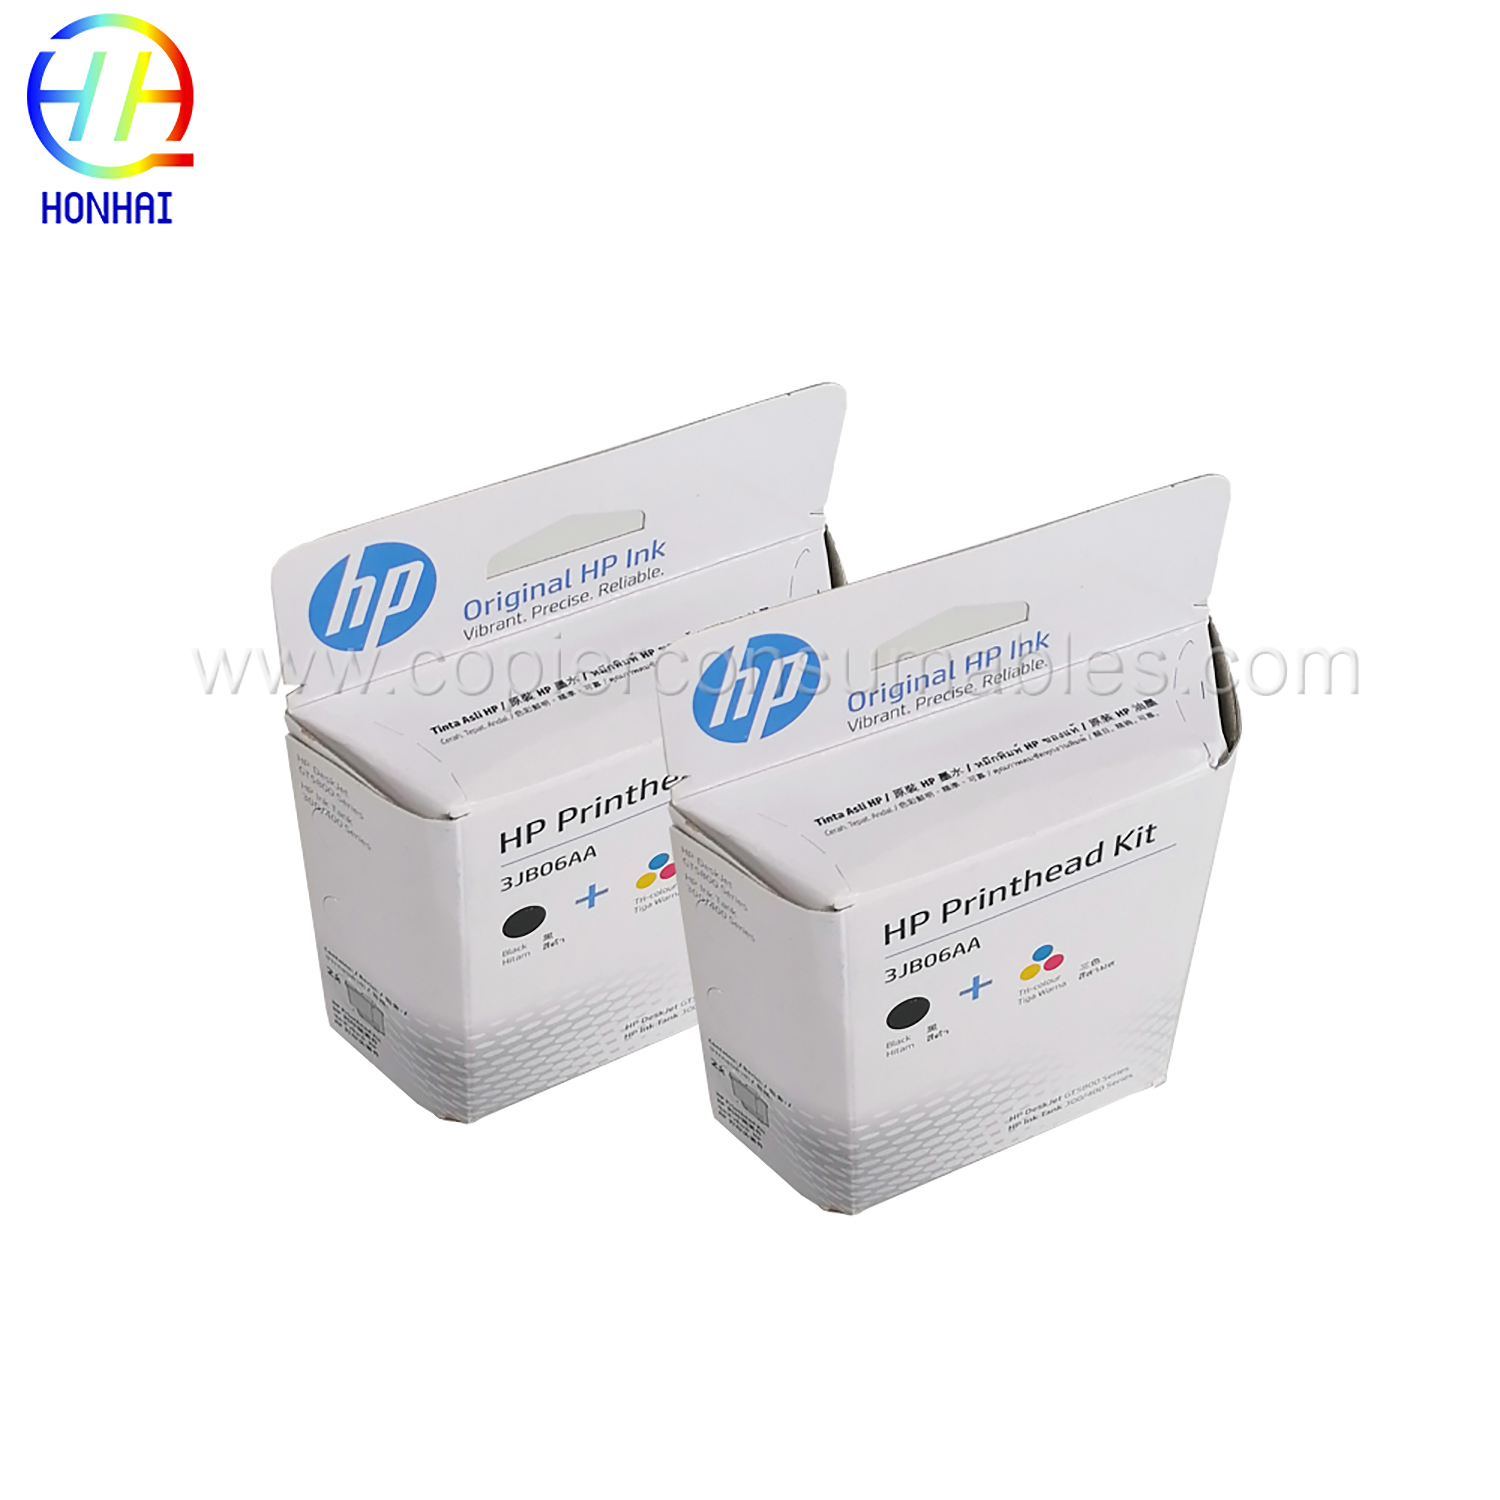 Ink Cartridge for HP GT51 GT52 GT5810 5820 310 410 318 3JB06A (3)